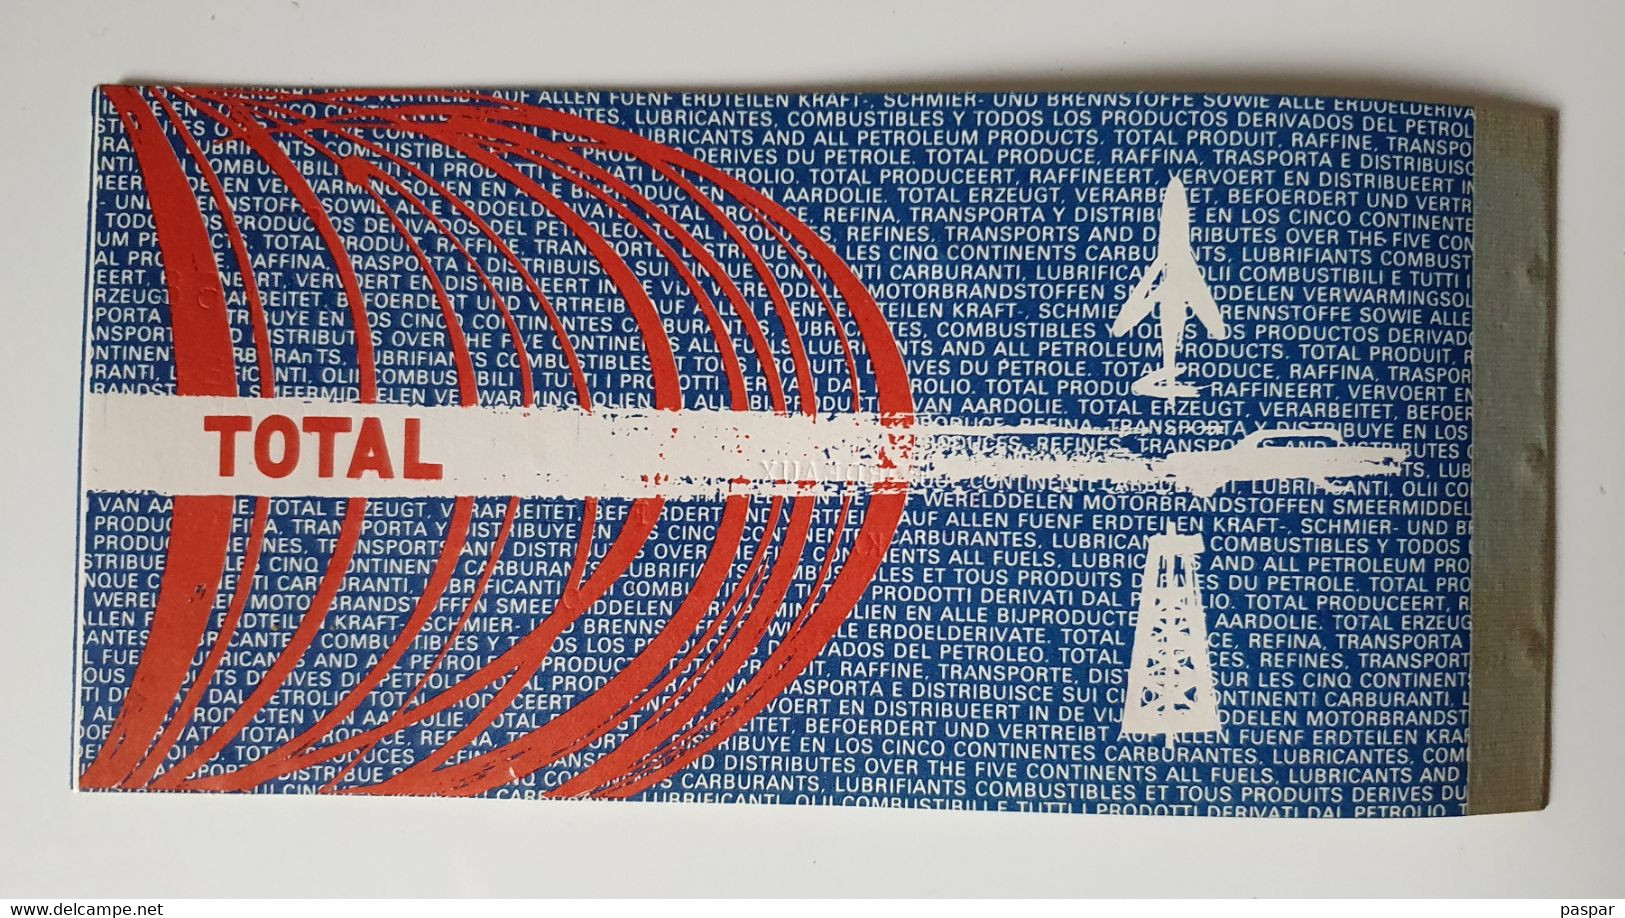 Billet D'avion Air France - Bordeaux Dakar 1968 - Billet De Passage Et Bulletin De Bagages - Tickets